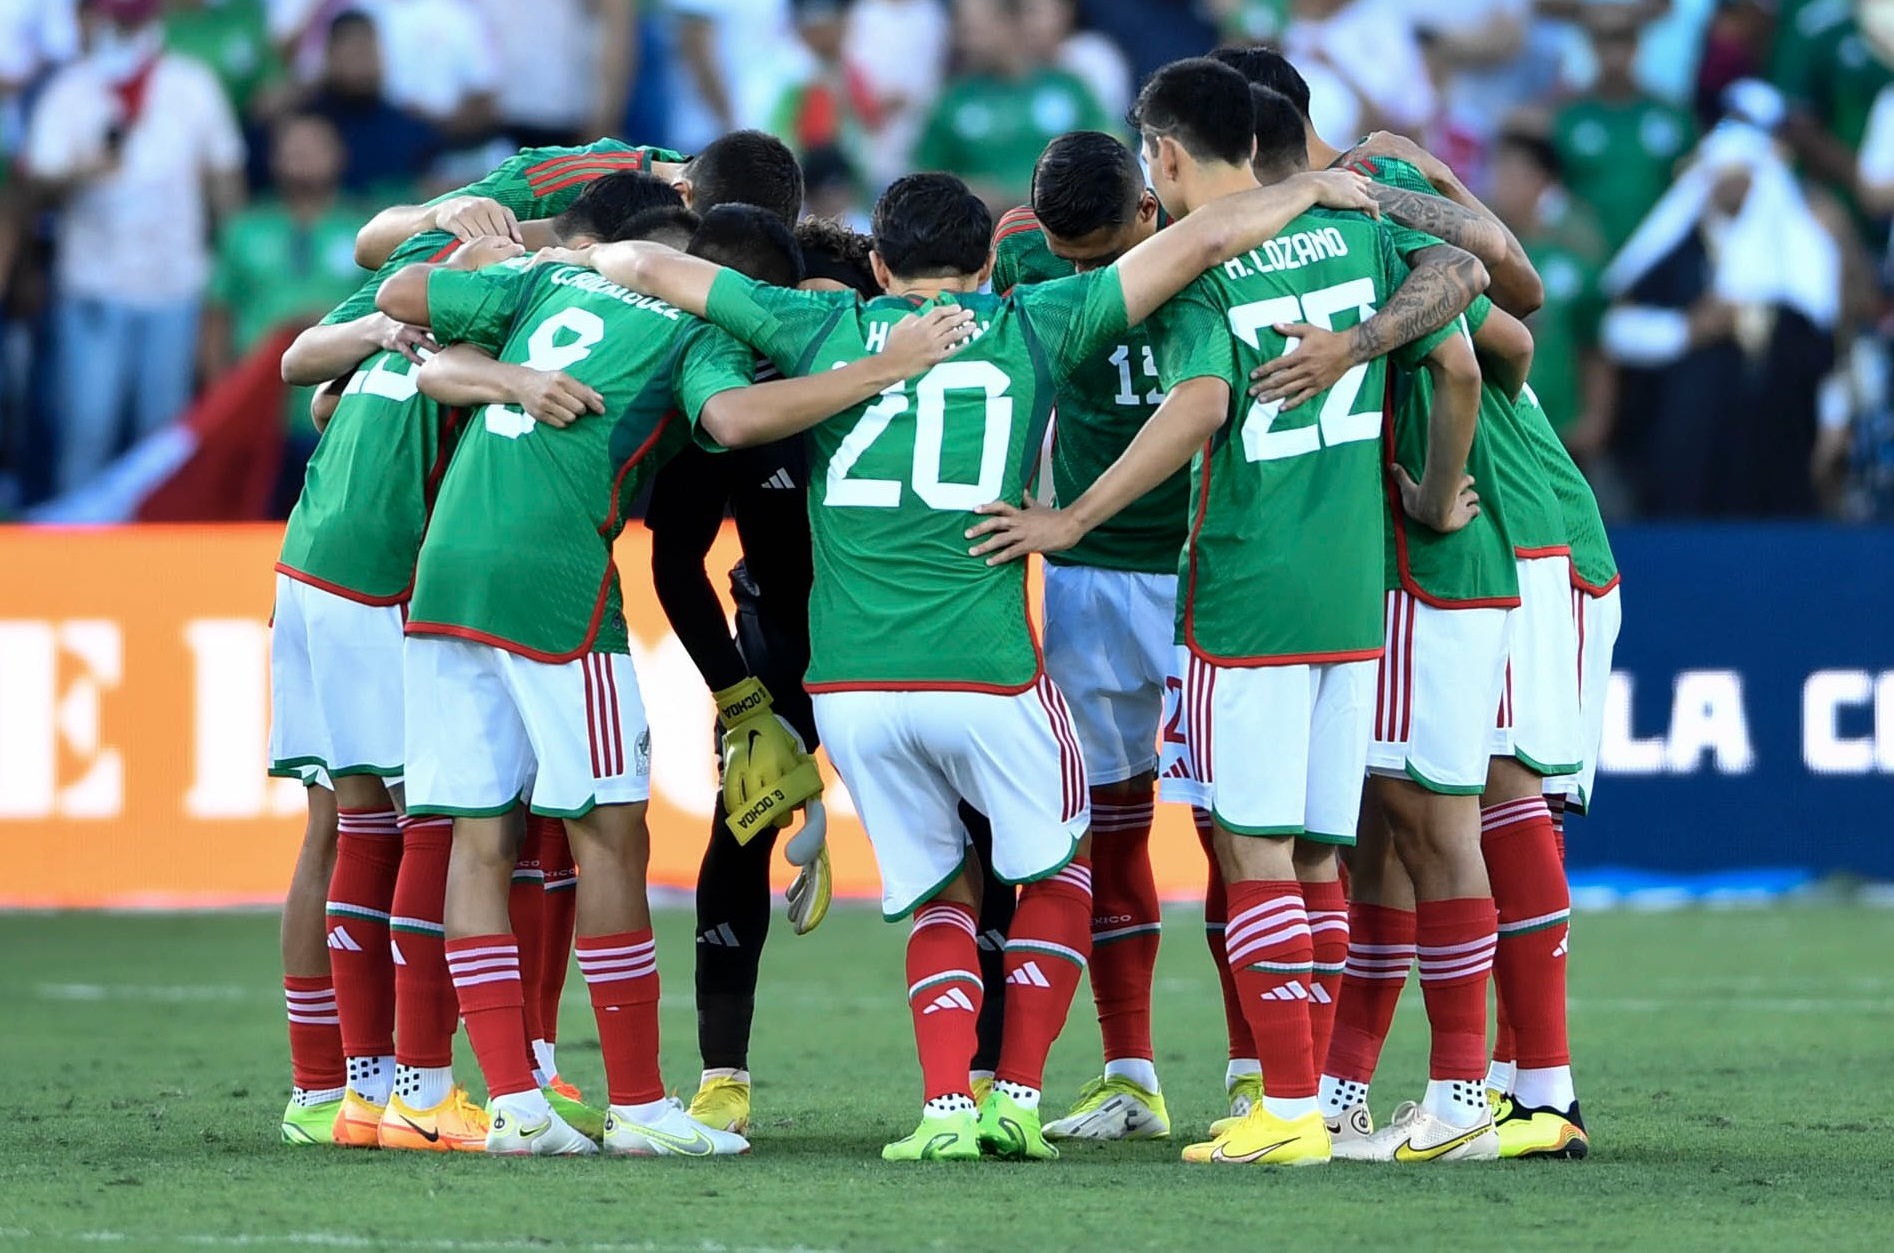 El periodista deportivo adelantó que México puede tener una sorpresa favorable en Qatar 2022 (Foto: Twitter/ @miseleccionmx)